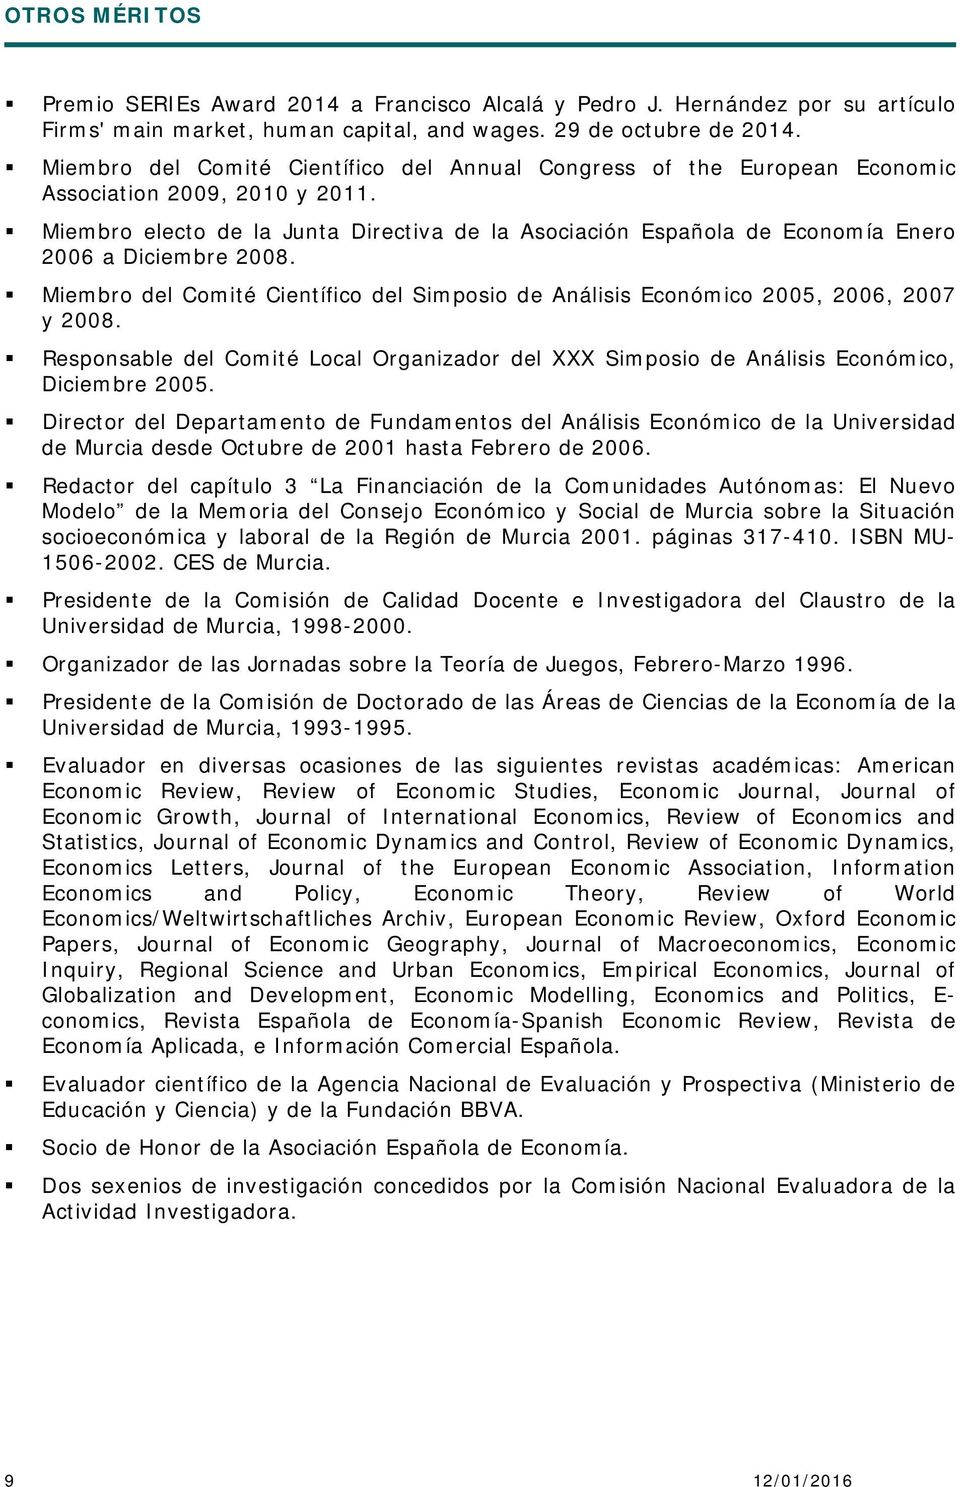 Miembro electo de la Junta Directiva de la Asociación Española de Economía Enero 2006 a Diciembre 2008. Miembro del Comité Científico del Simposio de Análisis Económico 2005, 2006, 2007 y 2008.